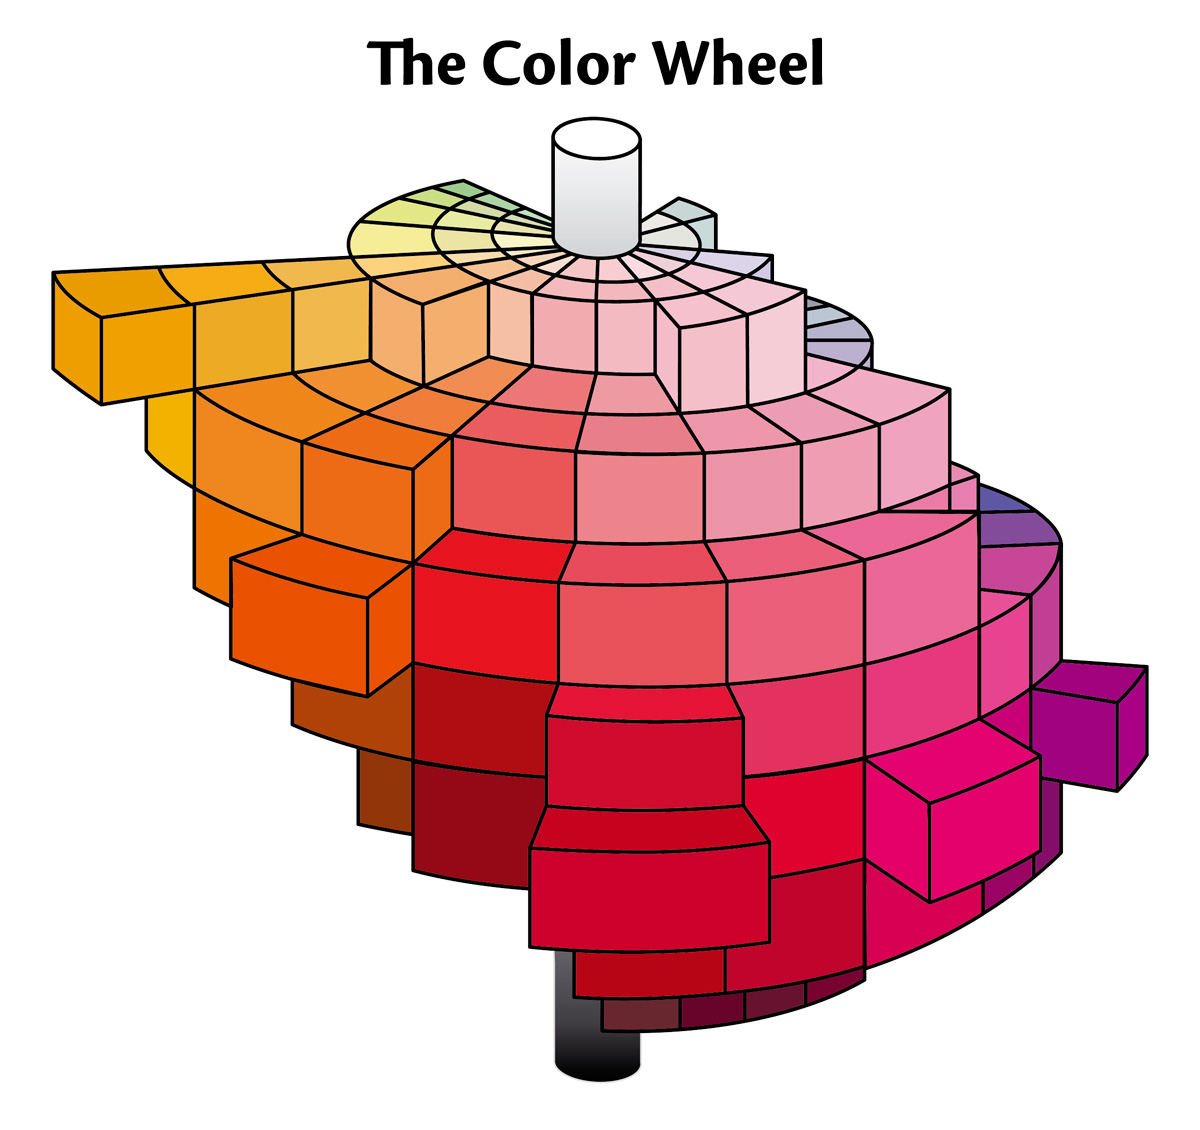 ในบรรดามิติทั้งสามของสี เนื้อสีจะกระจายเป็นวงกลมในแนวราบ ส่วนความสดของสีกระจายตัวในแนวตั้ง ค่าศูนย์อยู่ตรงกลาง และค่าสูงสุดอยู่ที่ขอบนอก ขณะที่ช่วงโทนสีต่างๆจะอยู่ในแนวดิ่ง จากโทนอ่อนสุดด้านบนไล่ลงไปหาโทนเข้มสุดด้านล่าง คลิกที่ภาพเพื่อขยายขนาด